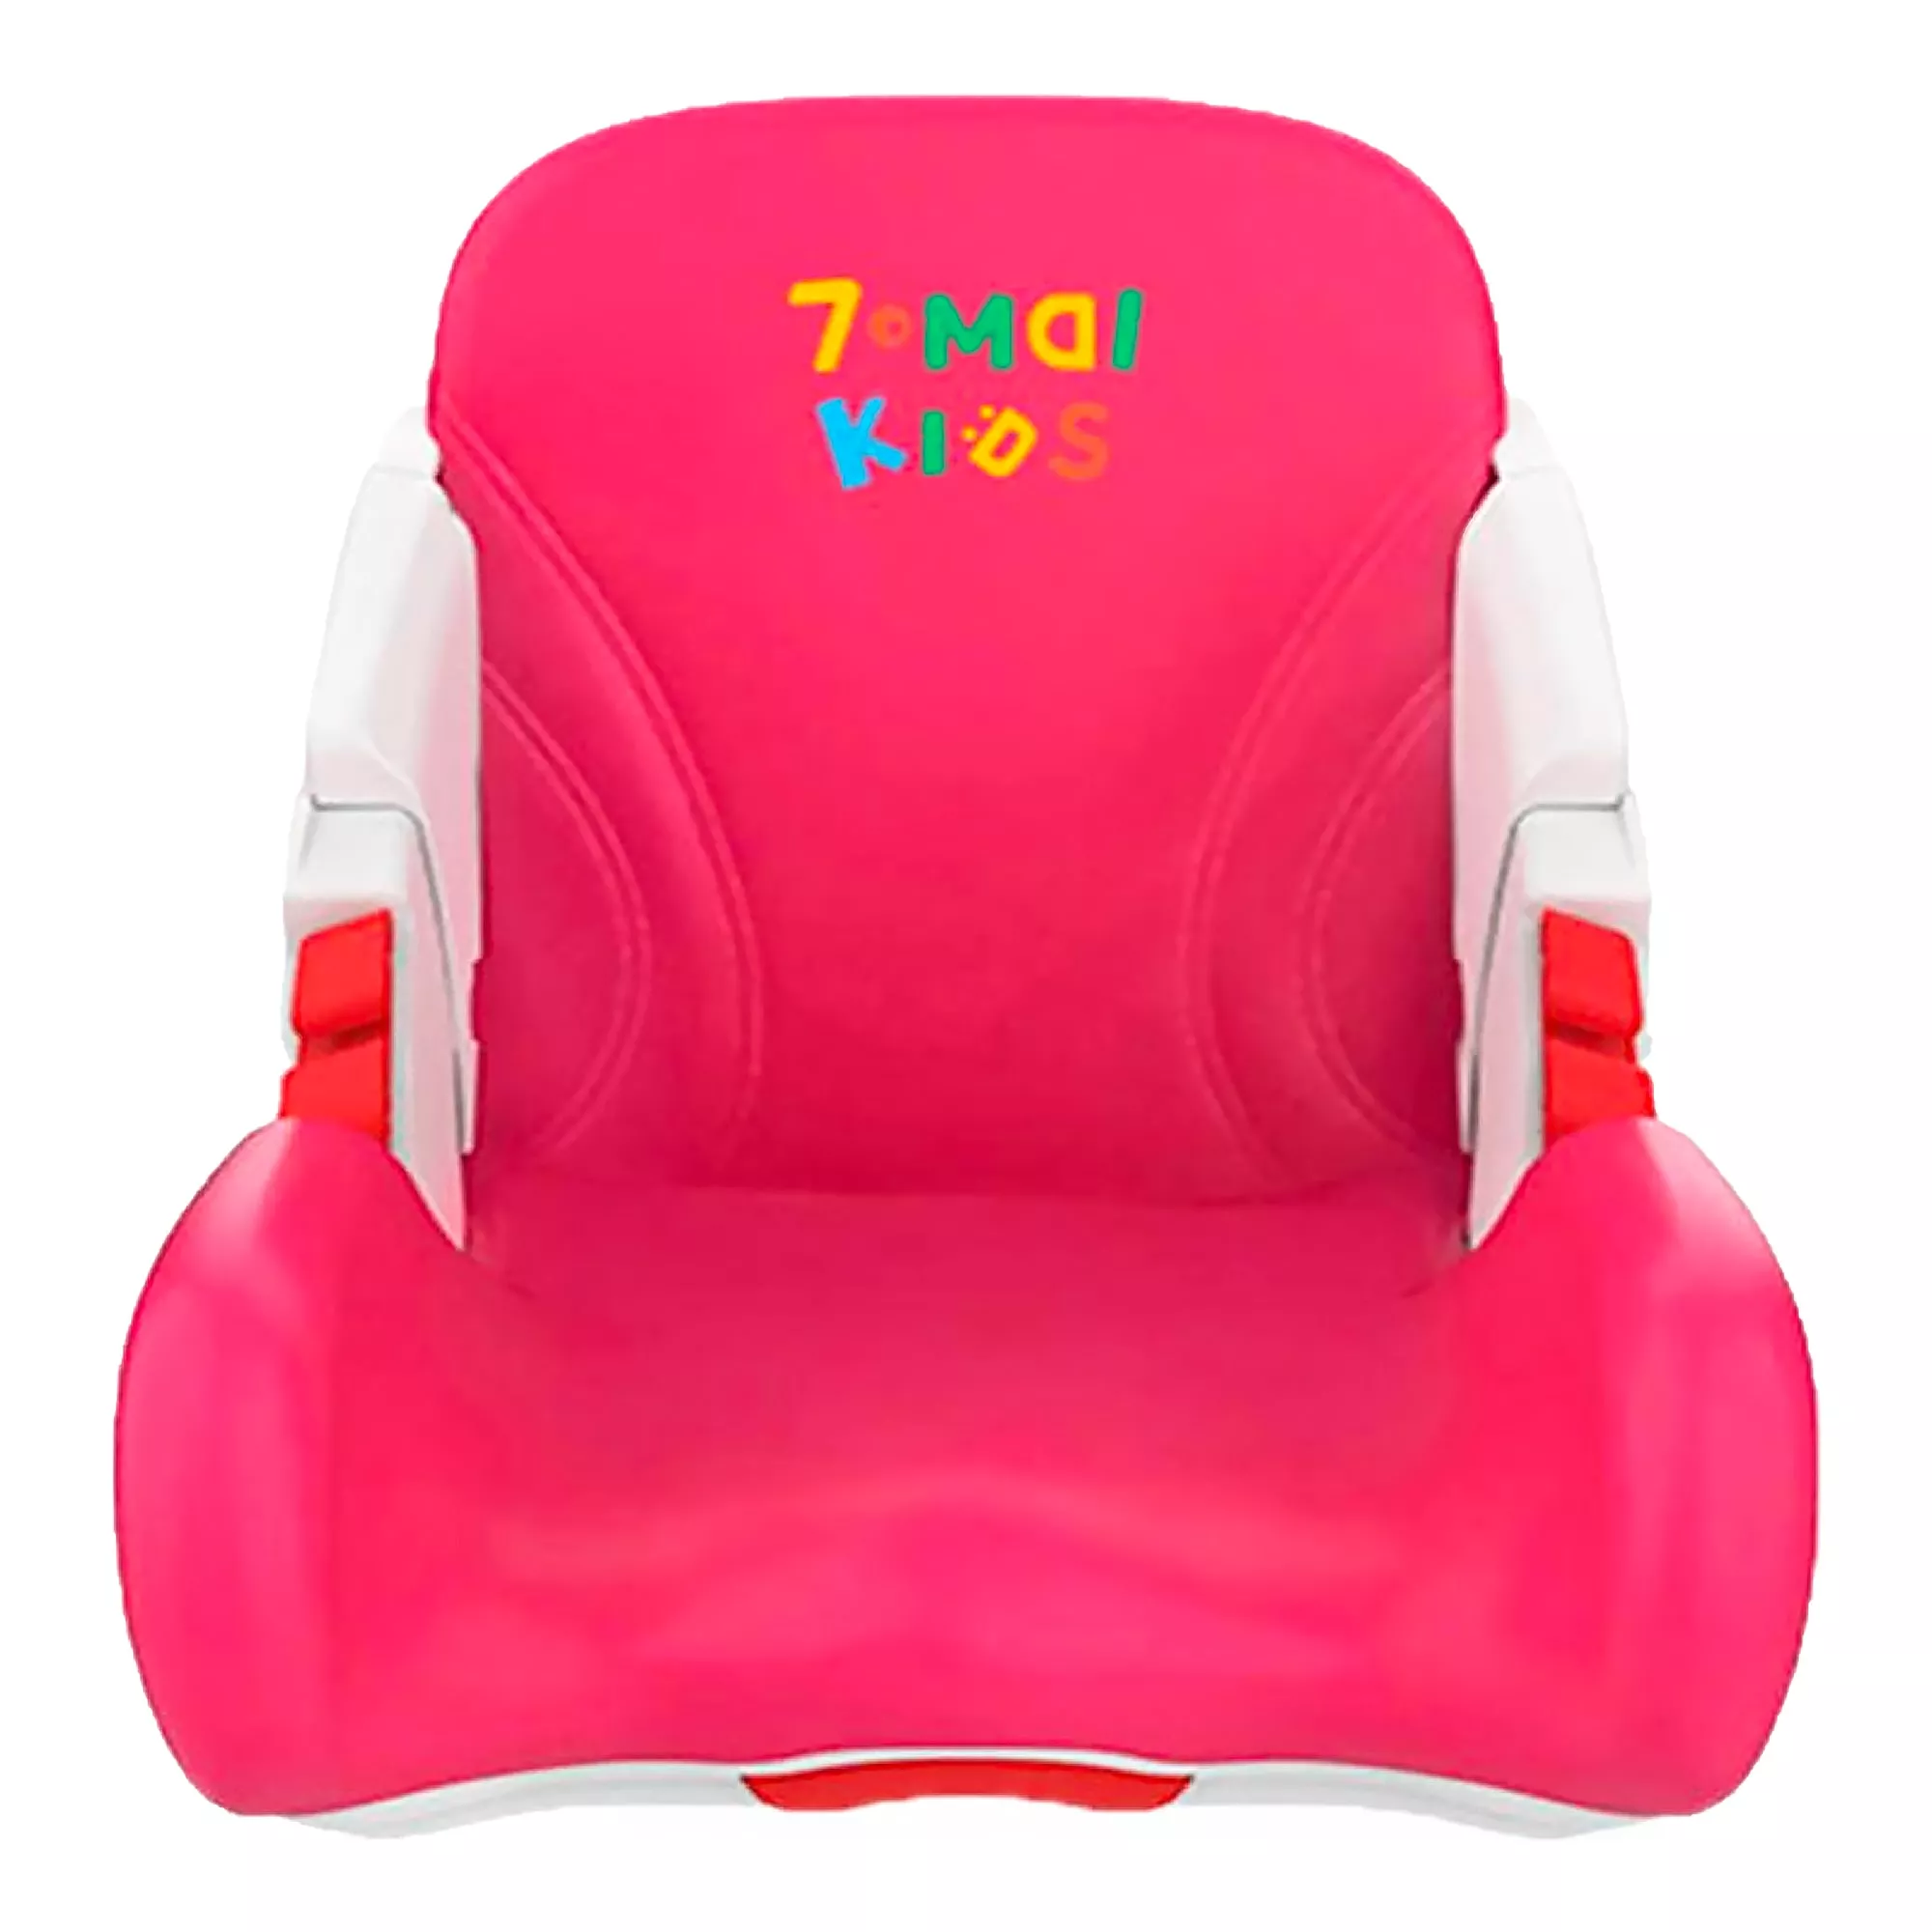 Автокресло Xiaomi 70mai Kids Child Safety Seat Red (504508)